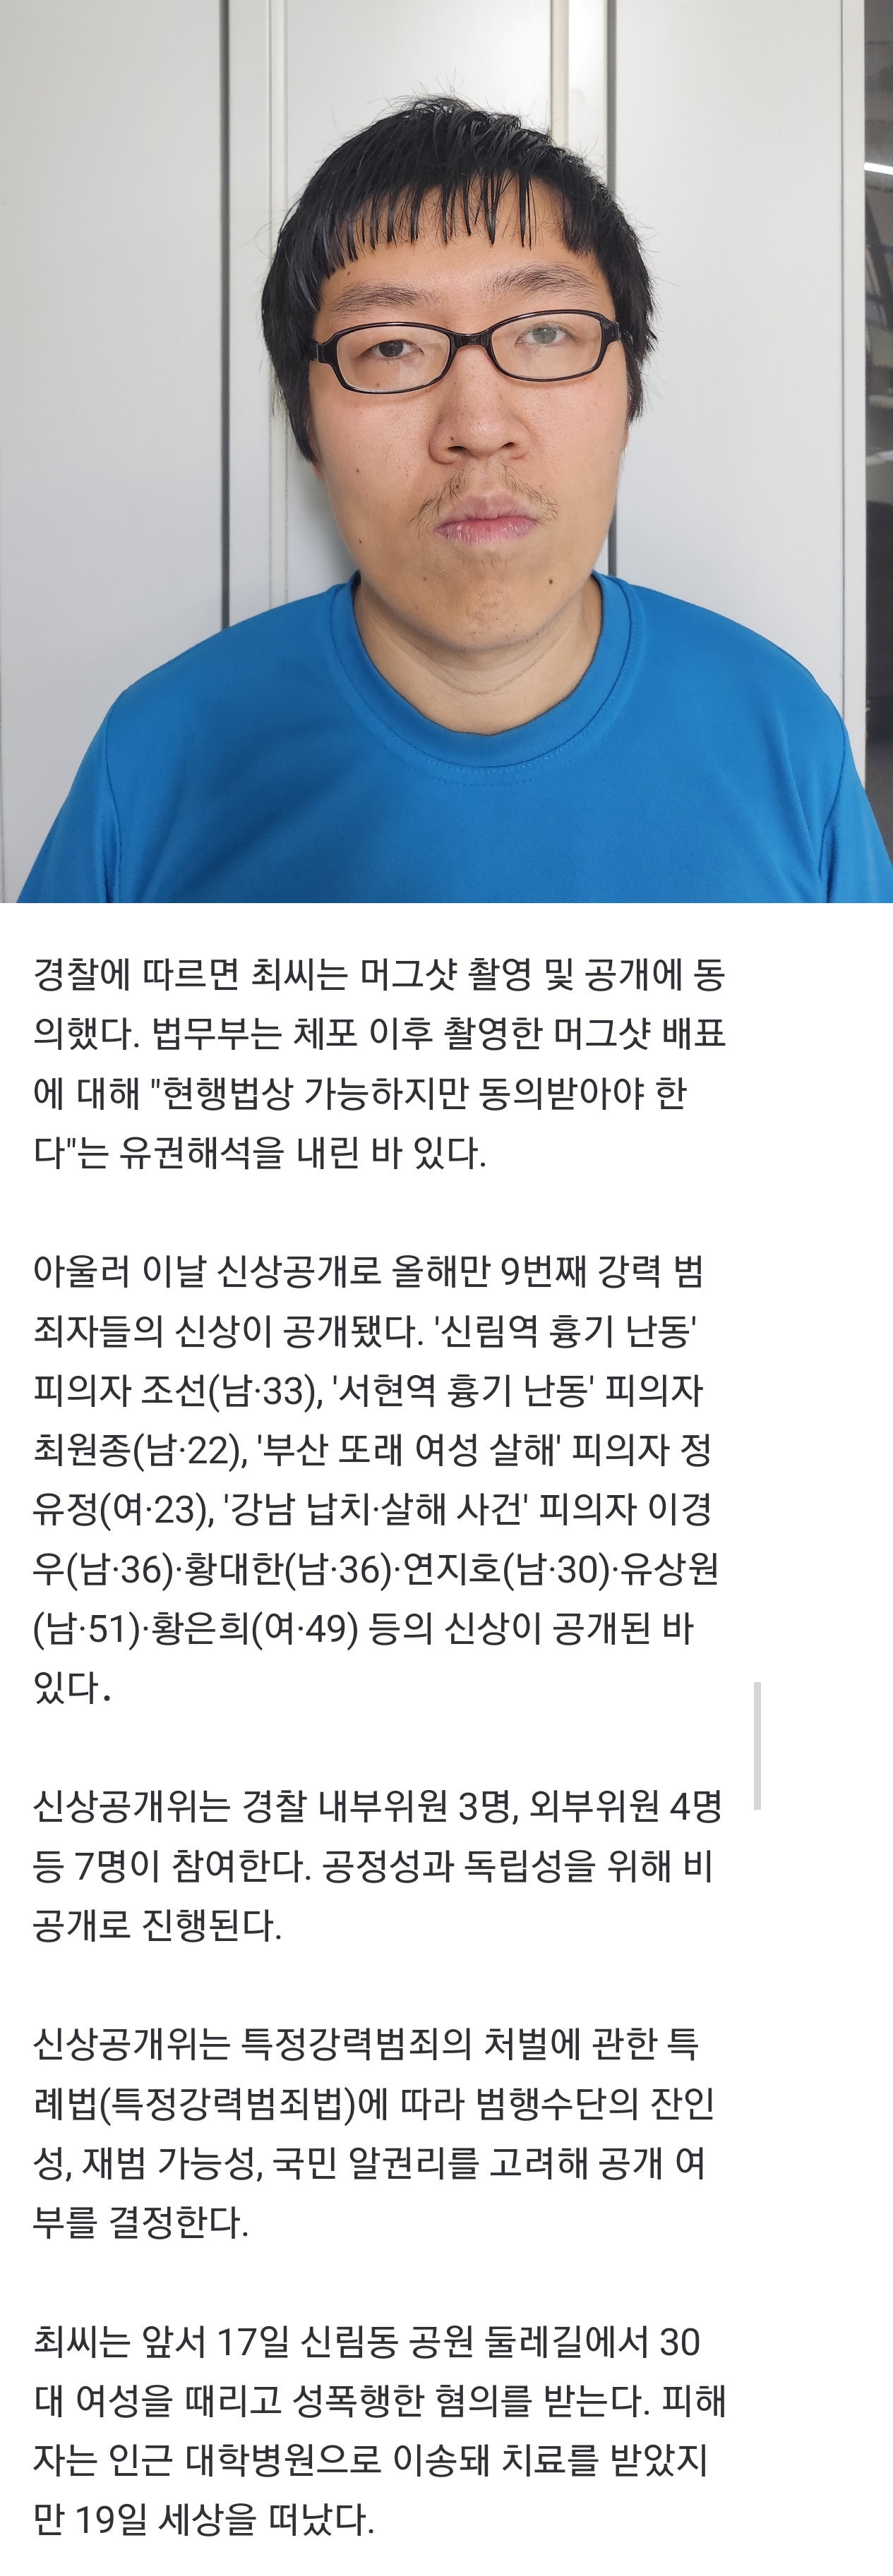 [속보] 신림동 성폭행 살인범 30세 최윤종…본인 동의로 머그샷 공개